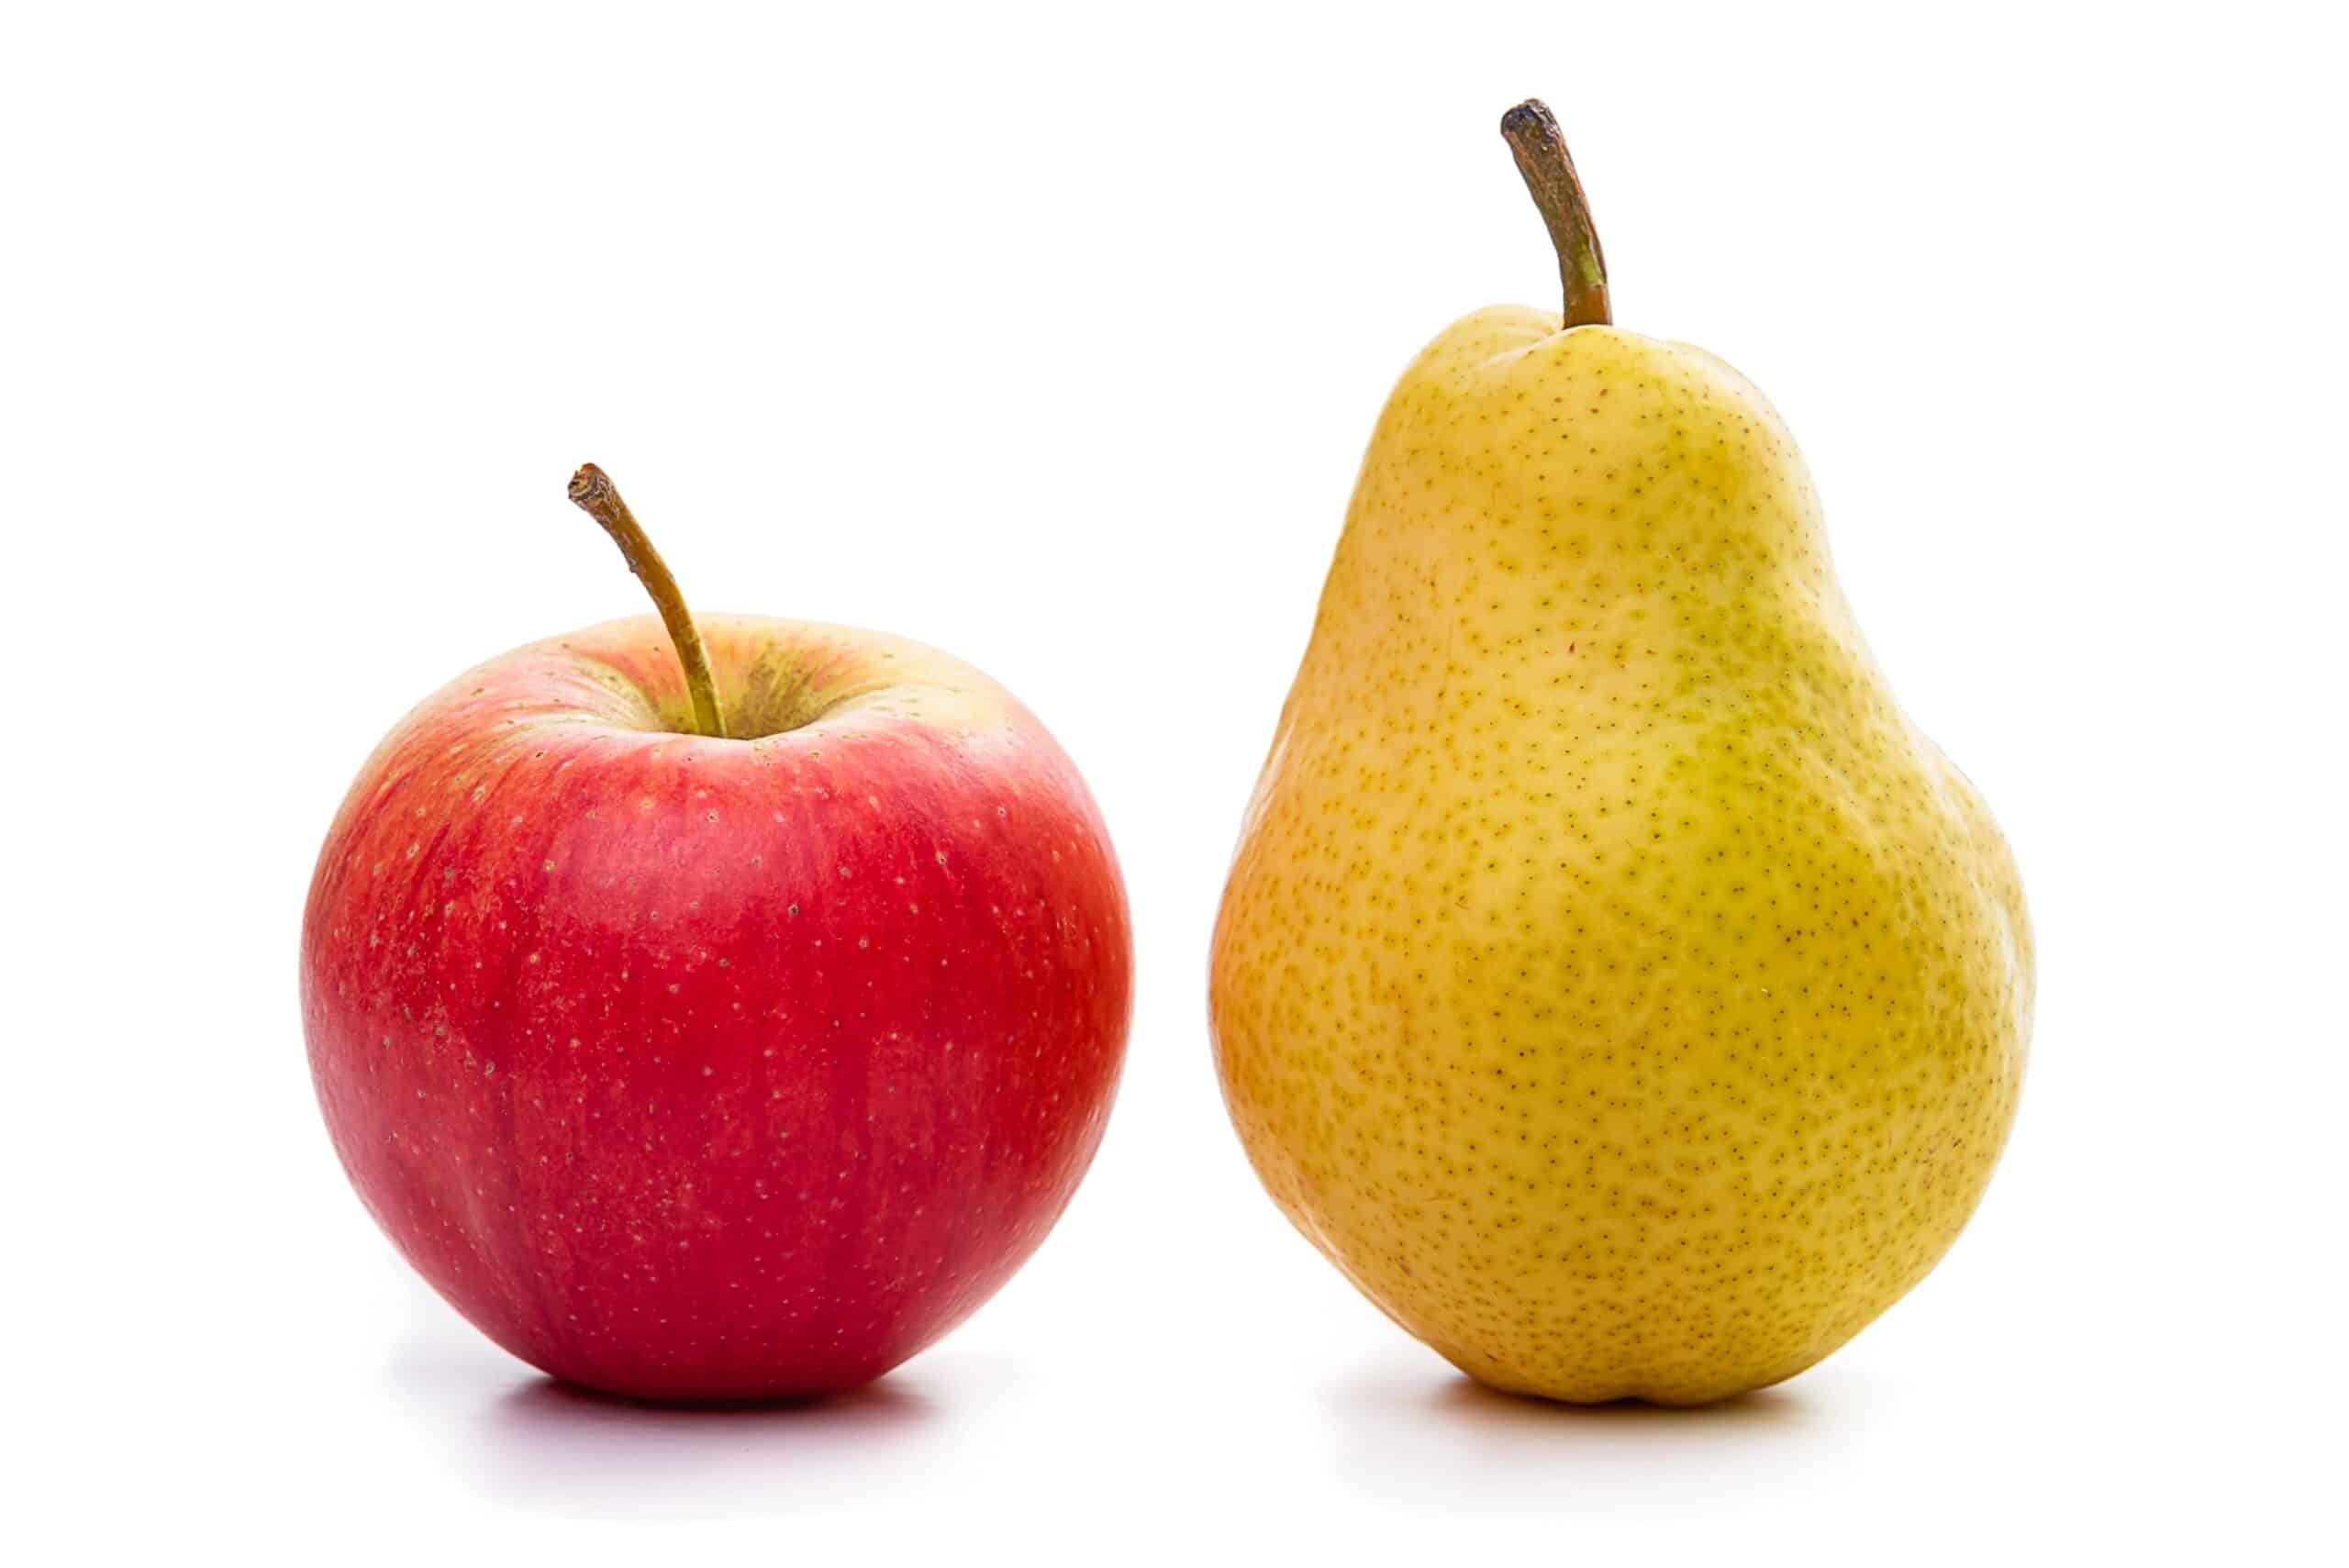 sepmed warszawa niepubliczny zaklad opieki zdrowotnej Jesteś gruszką czy jabłkiem